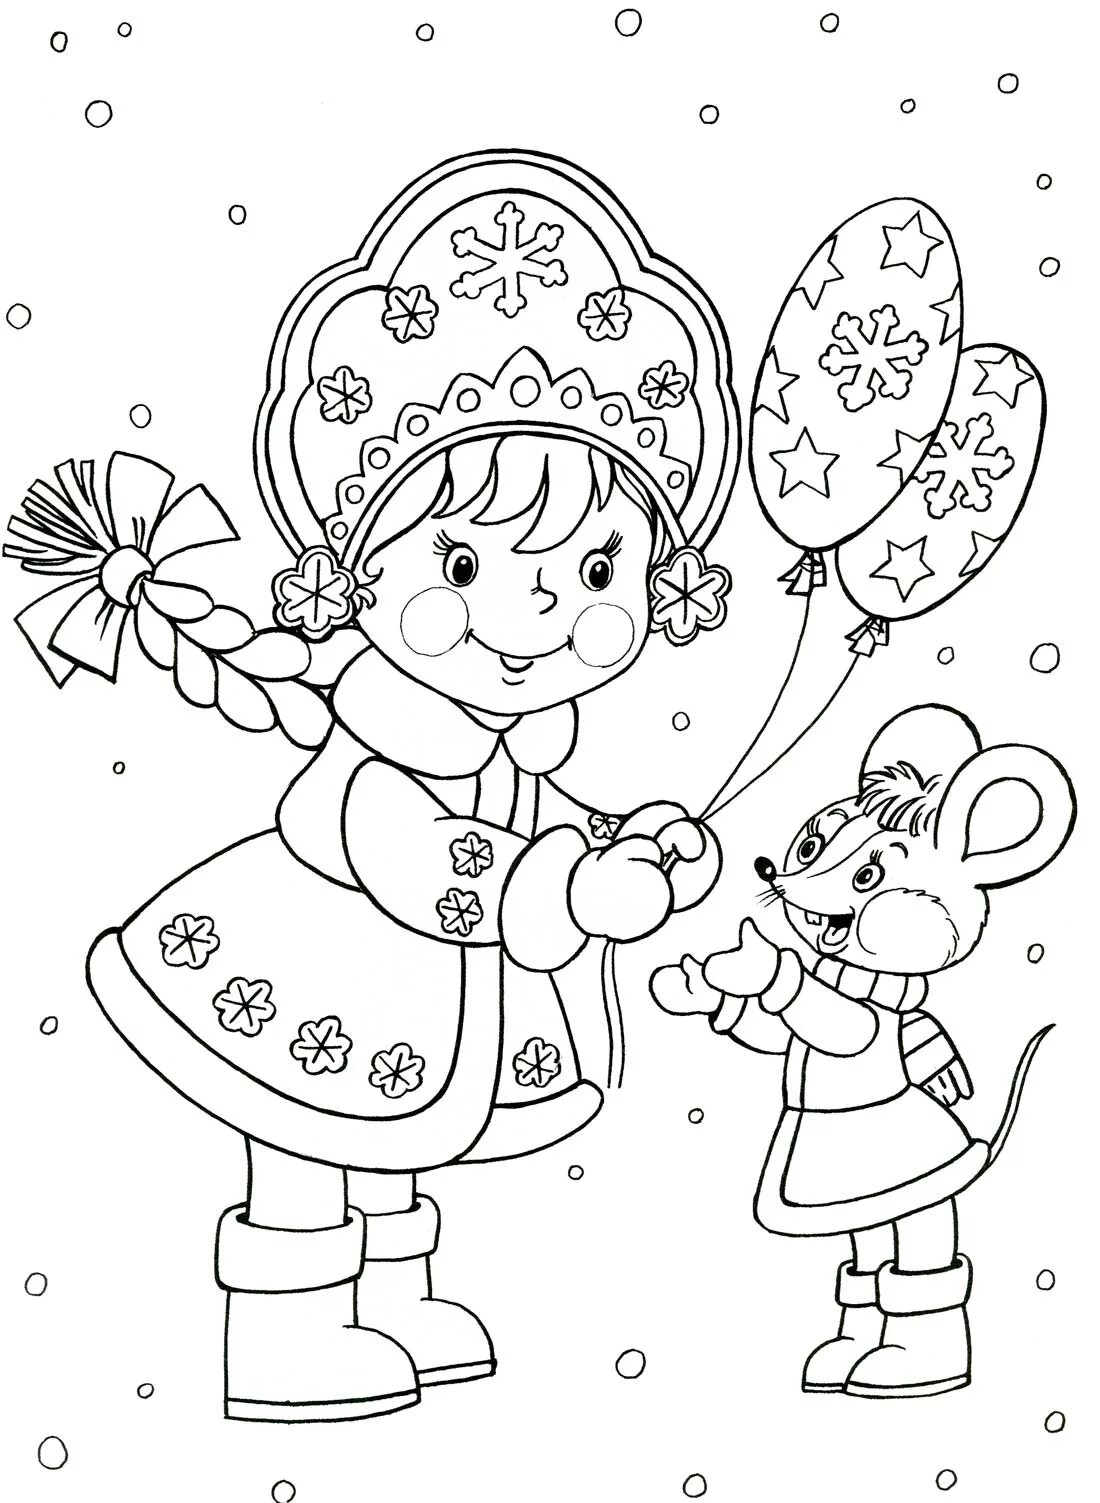 Новый год распечатанная. Раскраска Новогодняя для детей. Снегурочка раскраска для детей. Новогодние раскраски Снегурочка. Раскраска новый год для малышей.